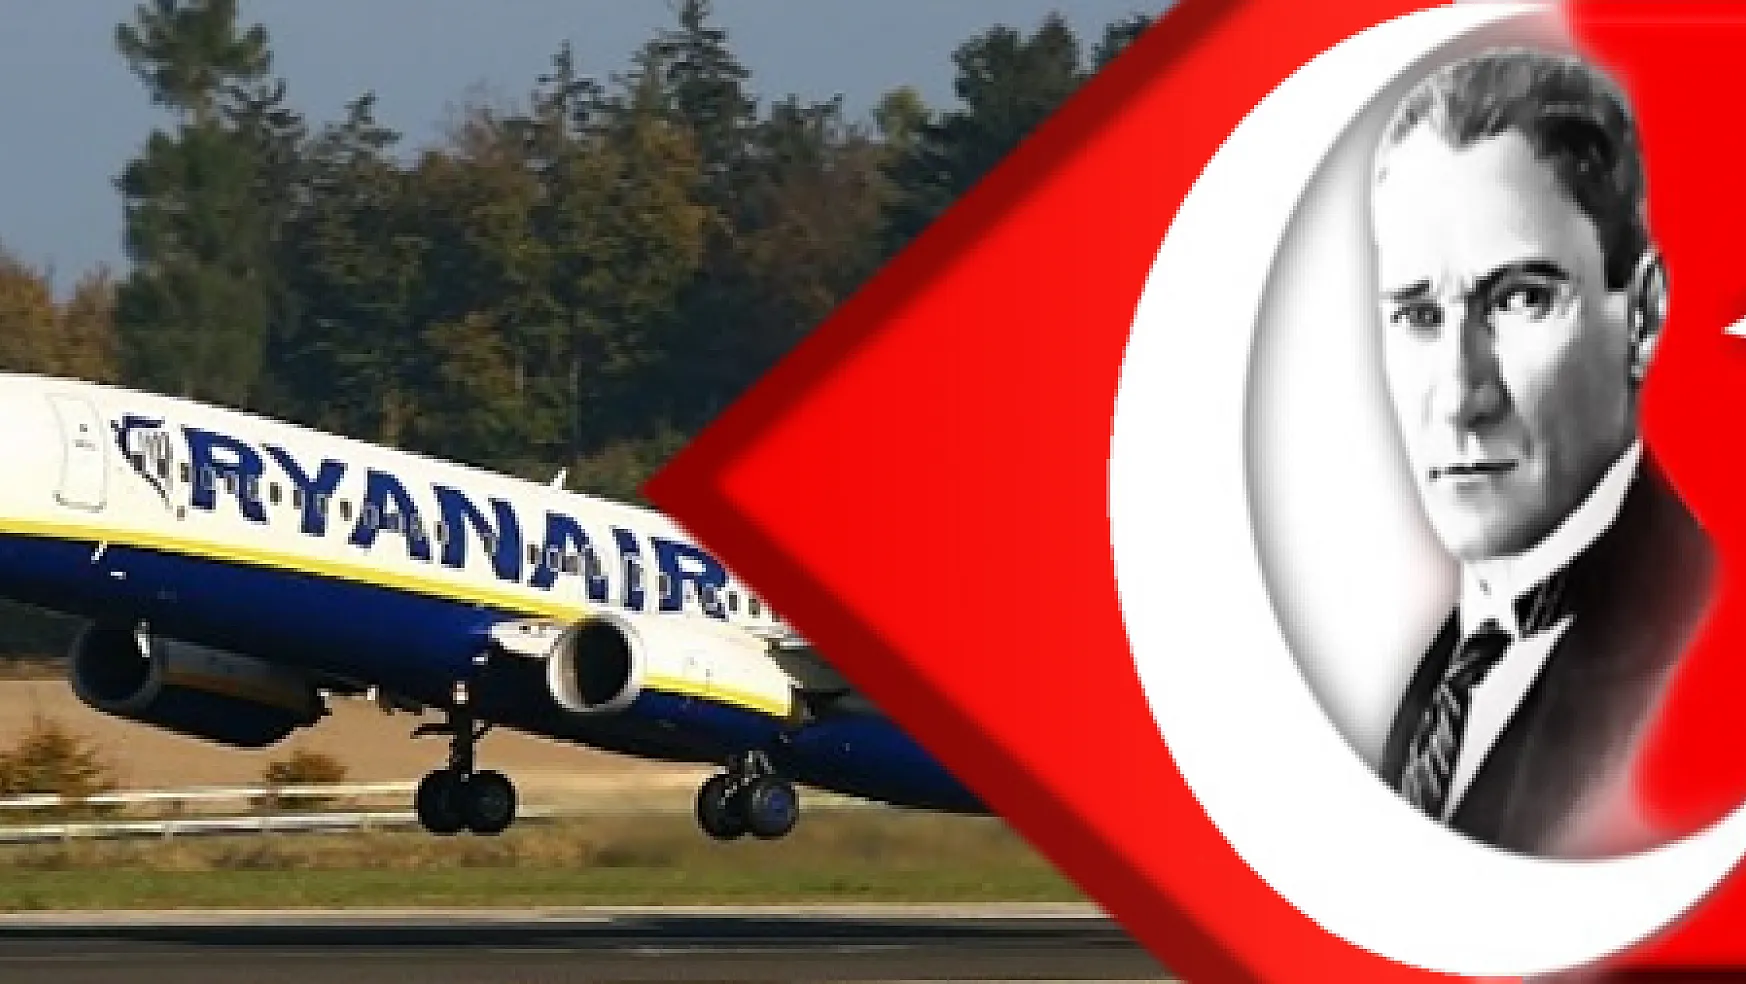 Ryan Air Türkiye'de ilk defa Dalaman Havalimanına uçacak